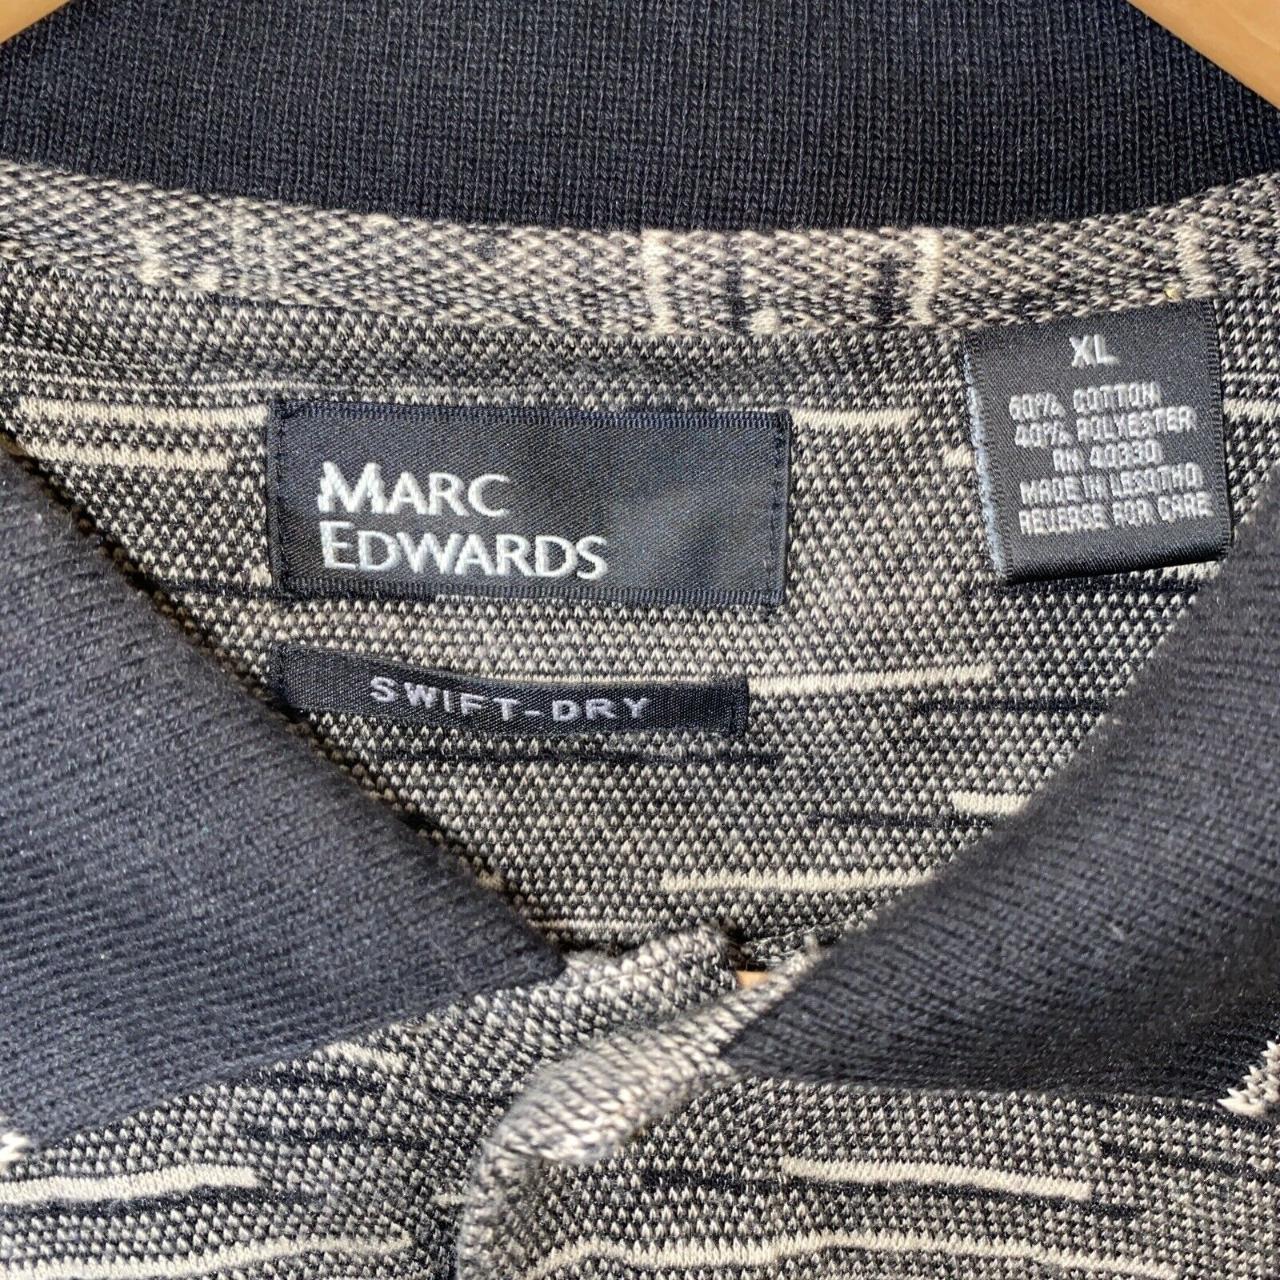 Marc Edwards Swift Dry Polo Style Short Sleeve Shirt... - Depop